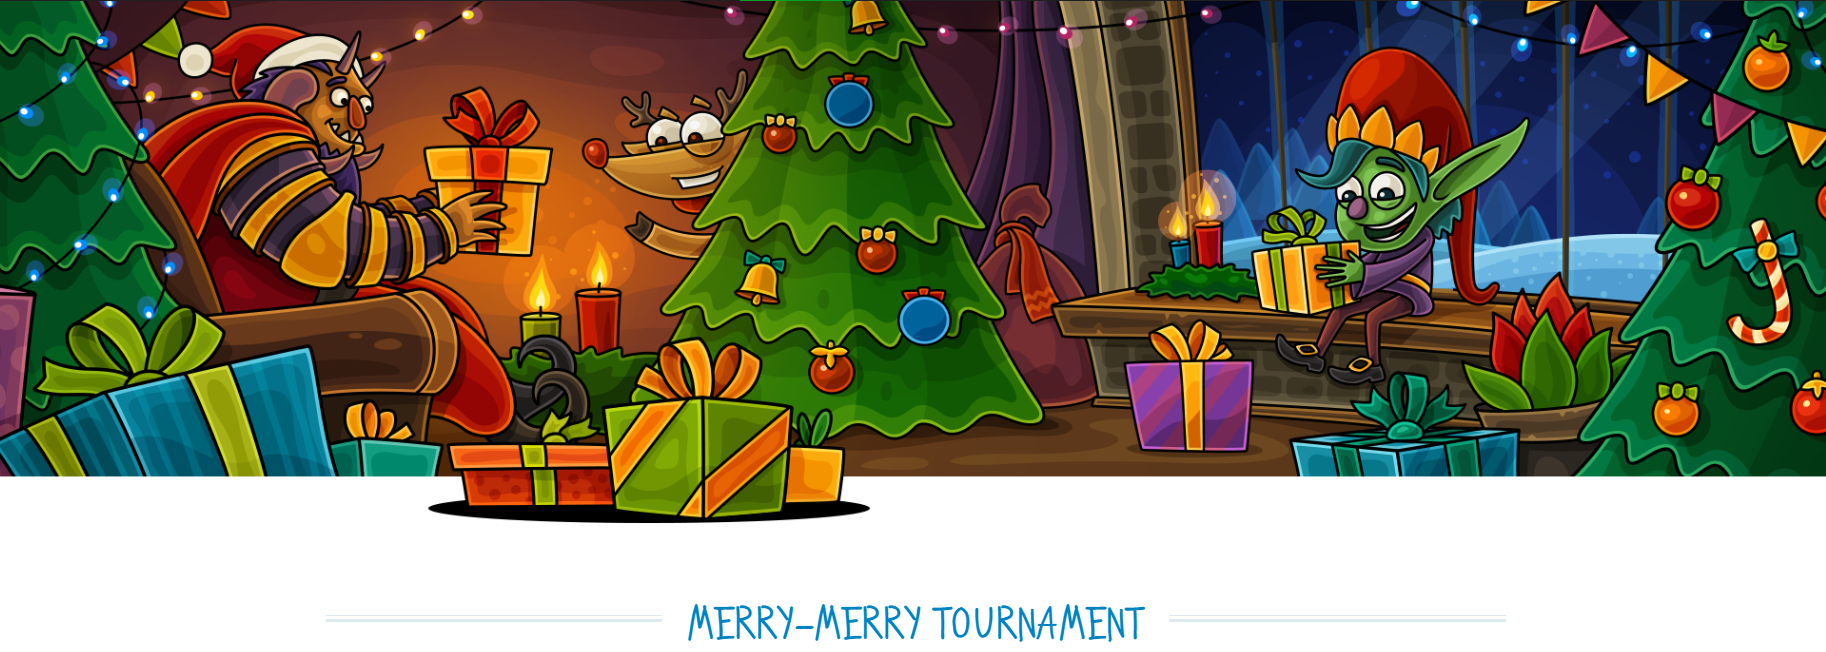 Casino-X Mery Merry Christmas Tournament